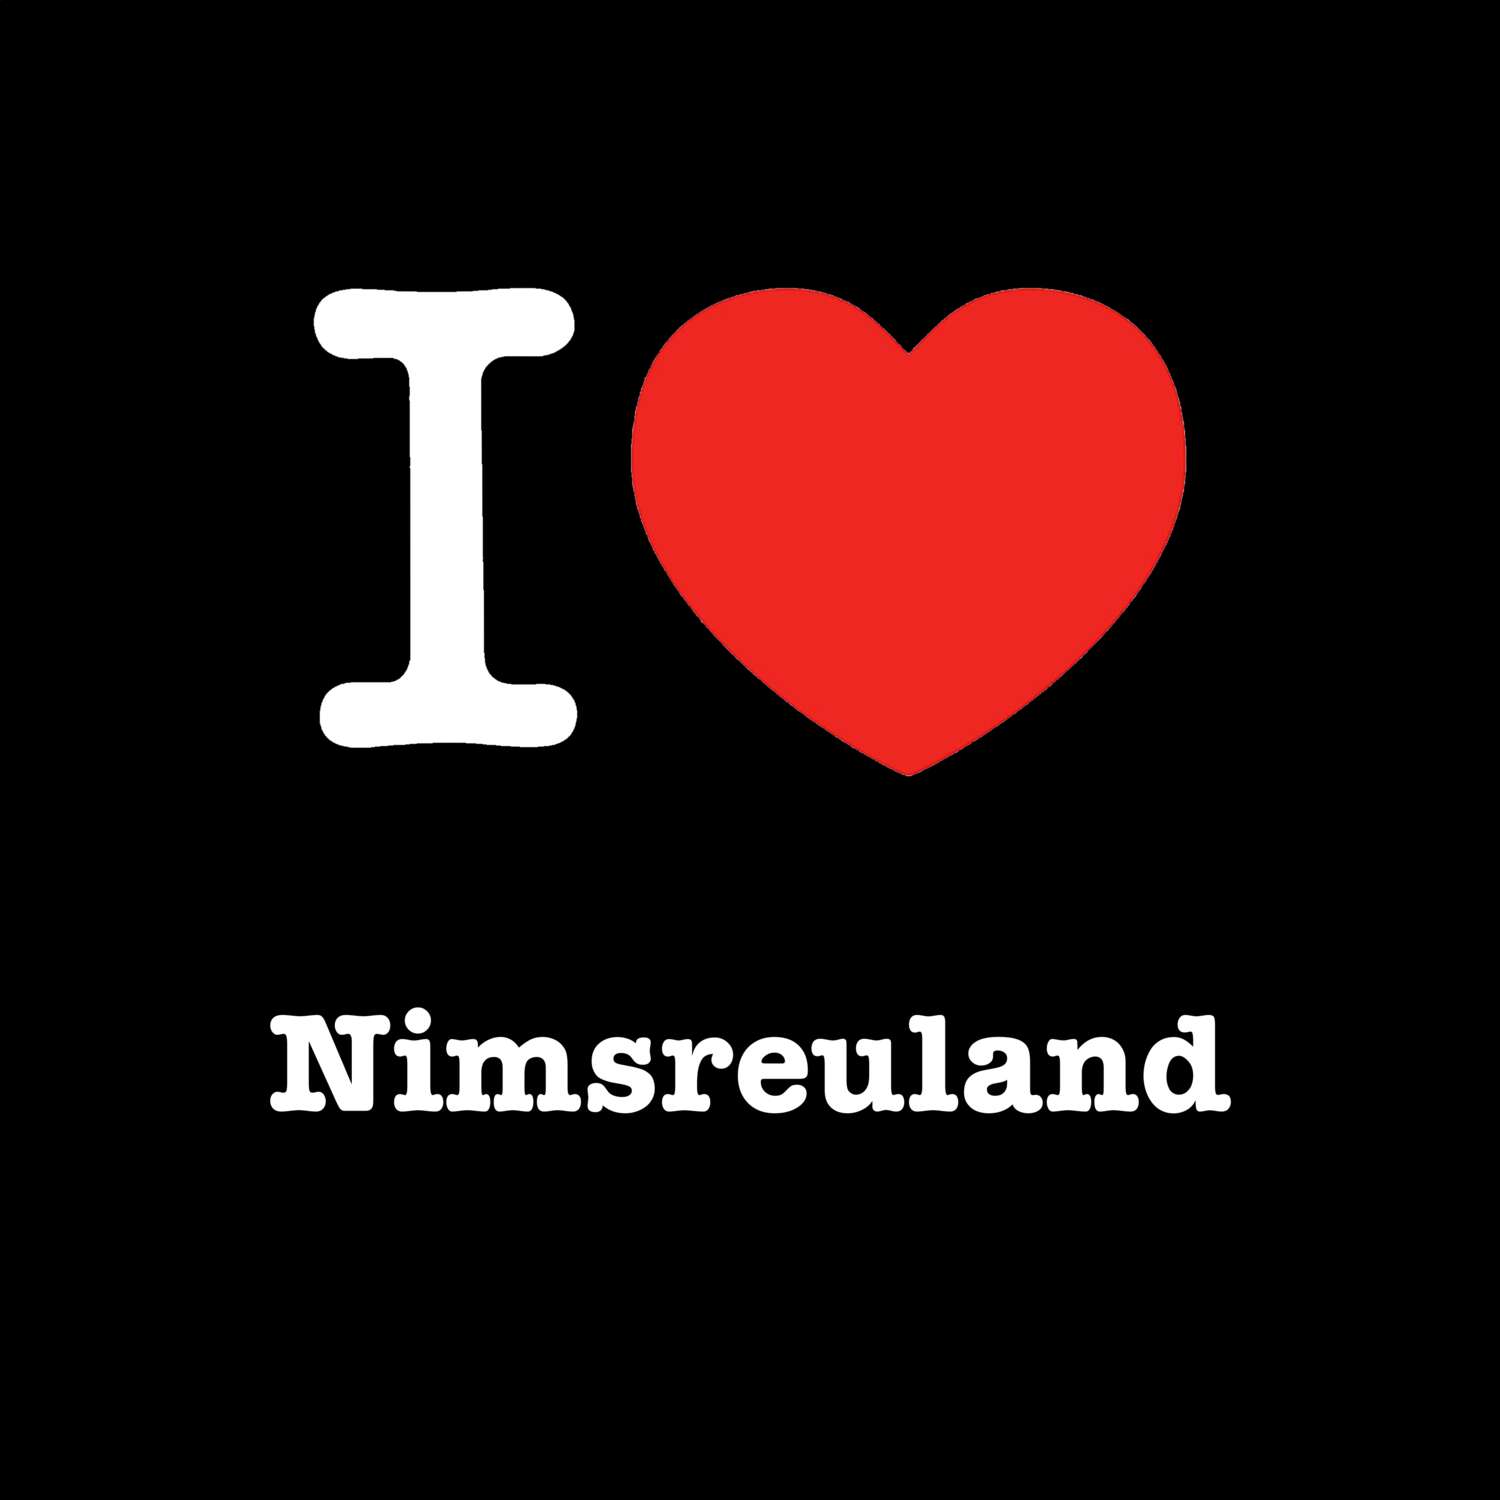 Nimsreuland T-Shirt »I love«